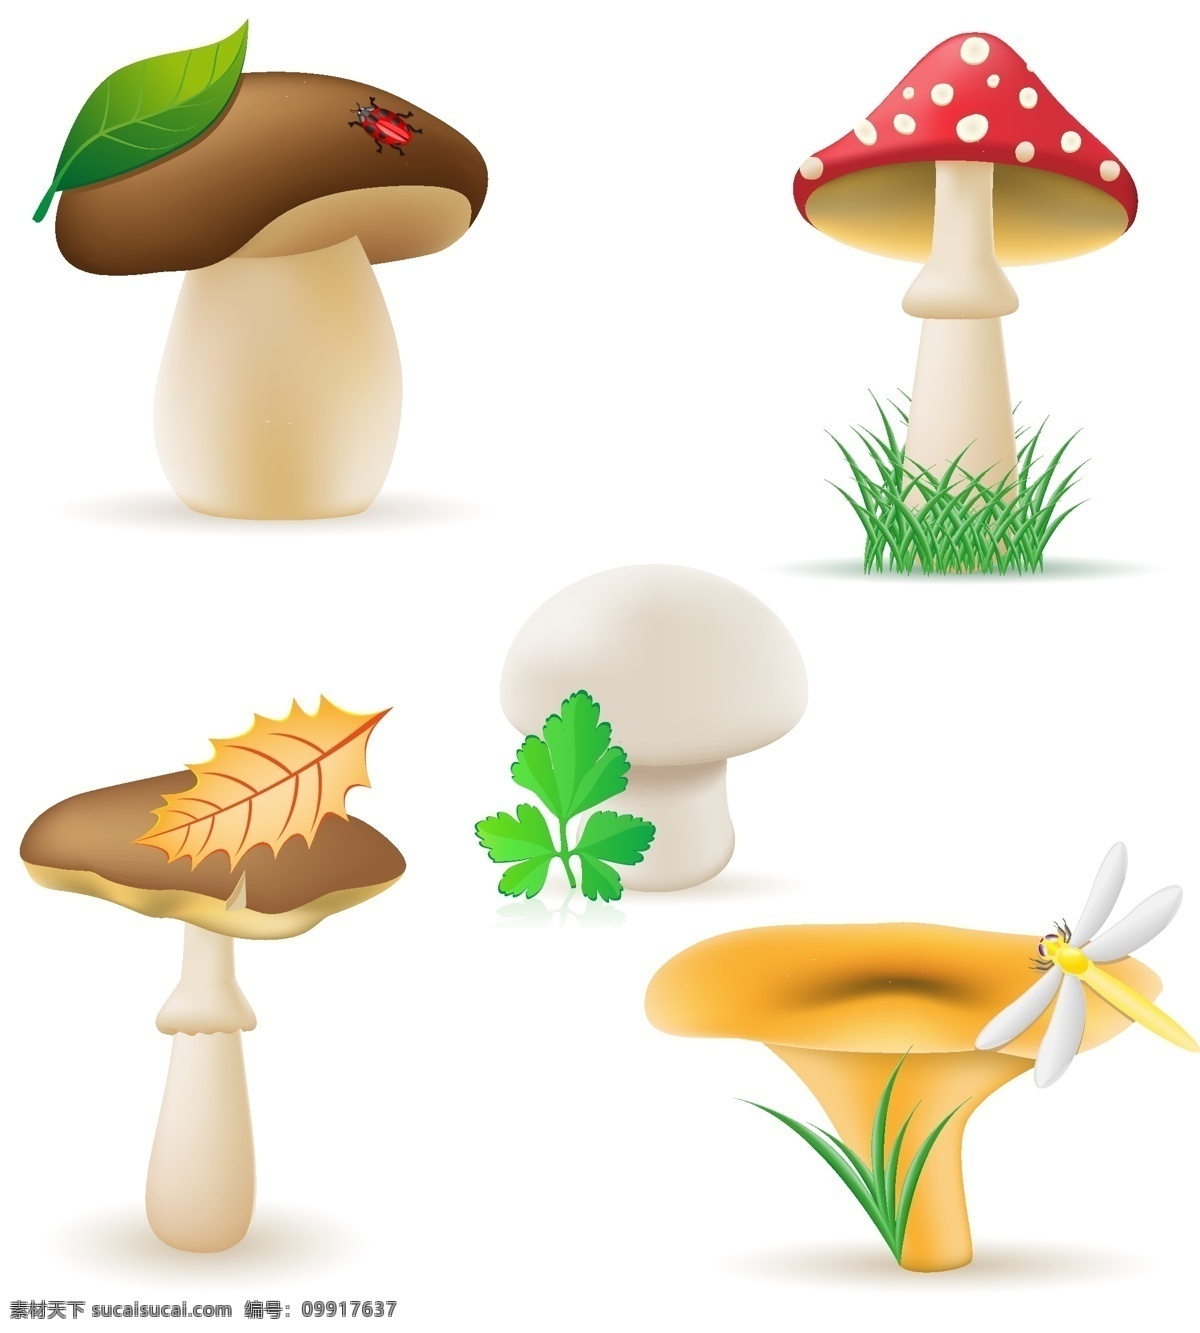 蘑菇食用菌 蘑菇 鲜菇 食用菌 野生蘑菇 美味 食材 食物 时尚背景 绚丽背景 背景素材 背景图案 矢量背景 背景设计 抽象背景 抽象设计 卡通背景 矢量设计 卡通设计 艺术设计 餐饮美食 生活百科 矢量